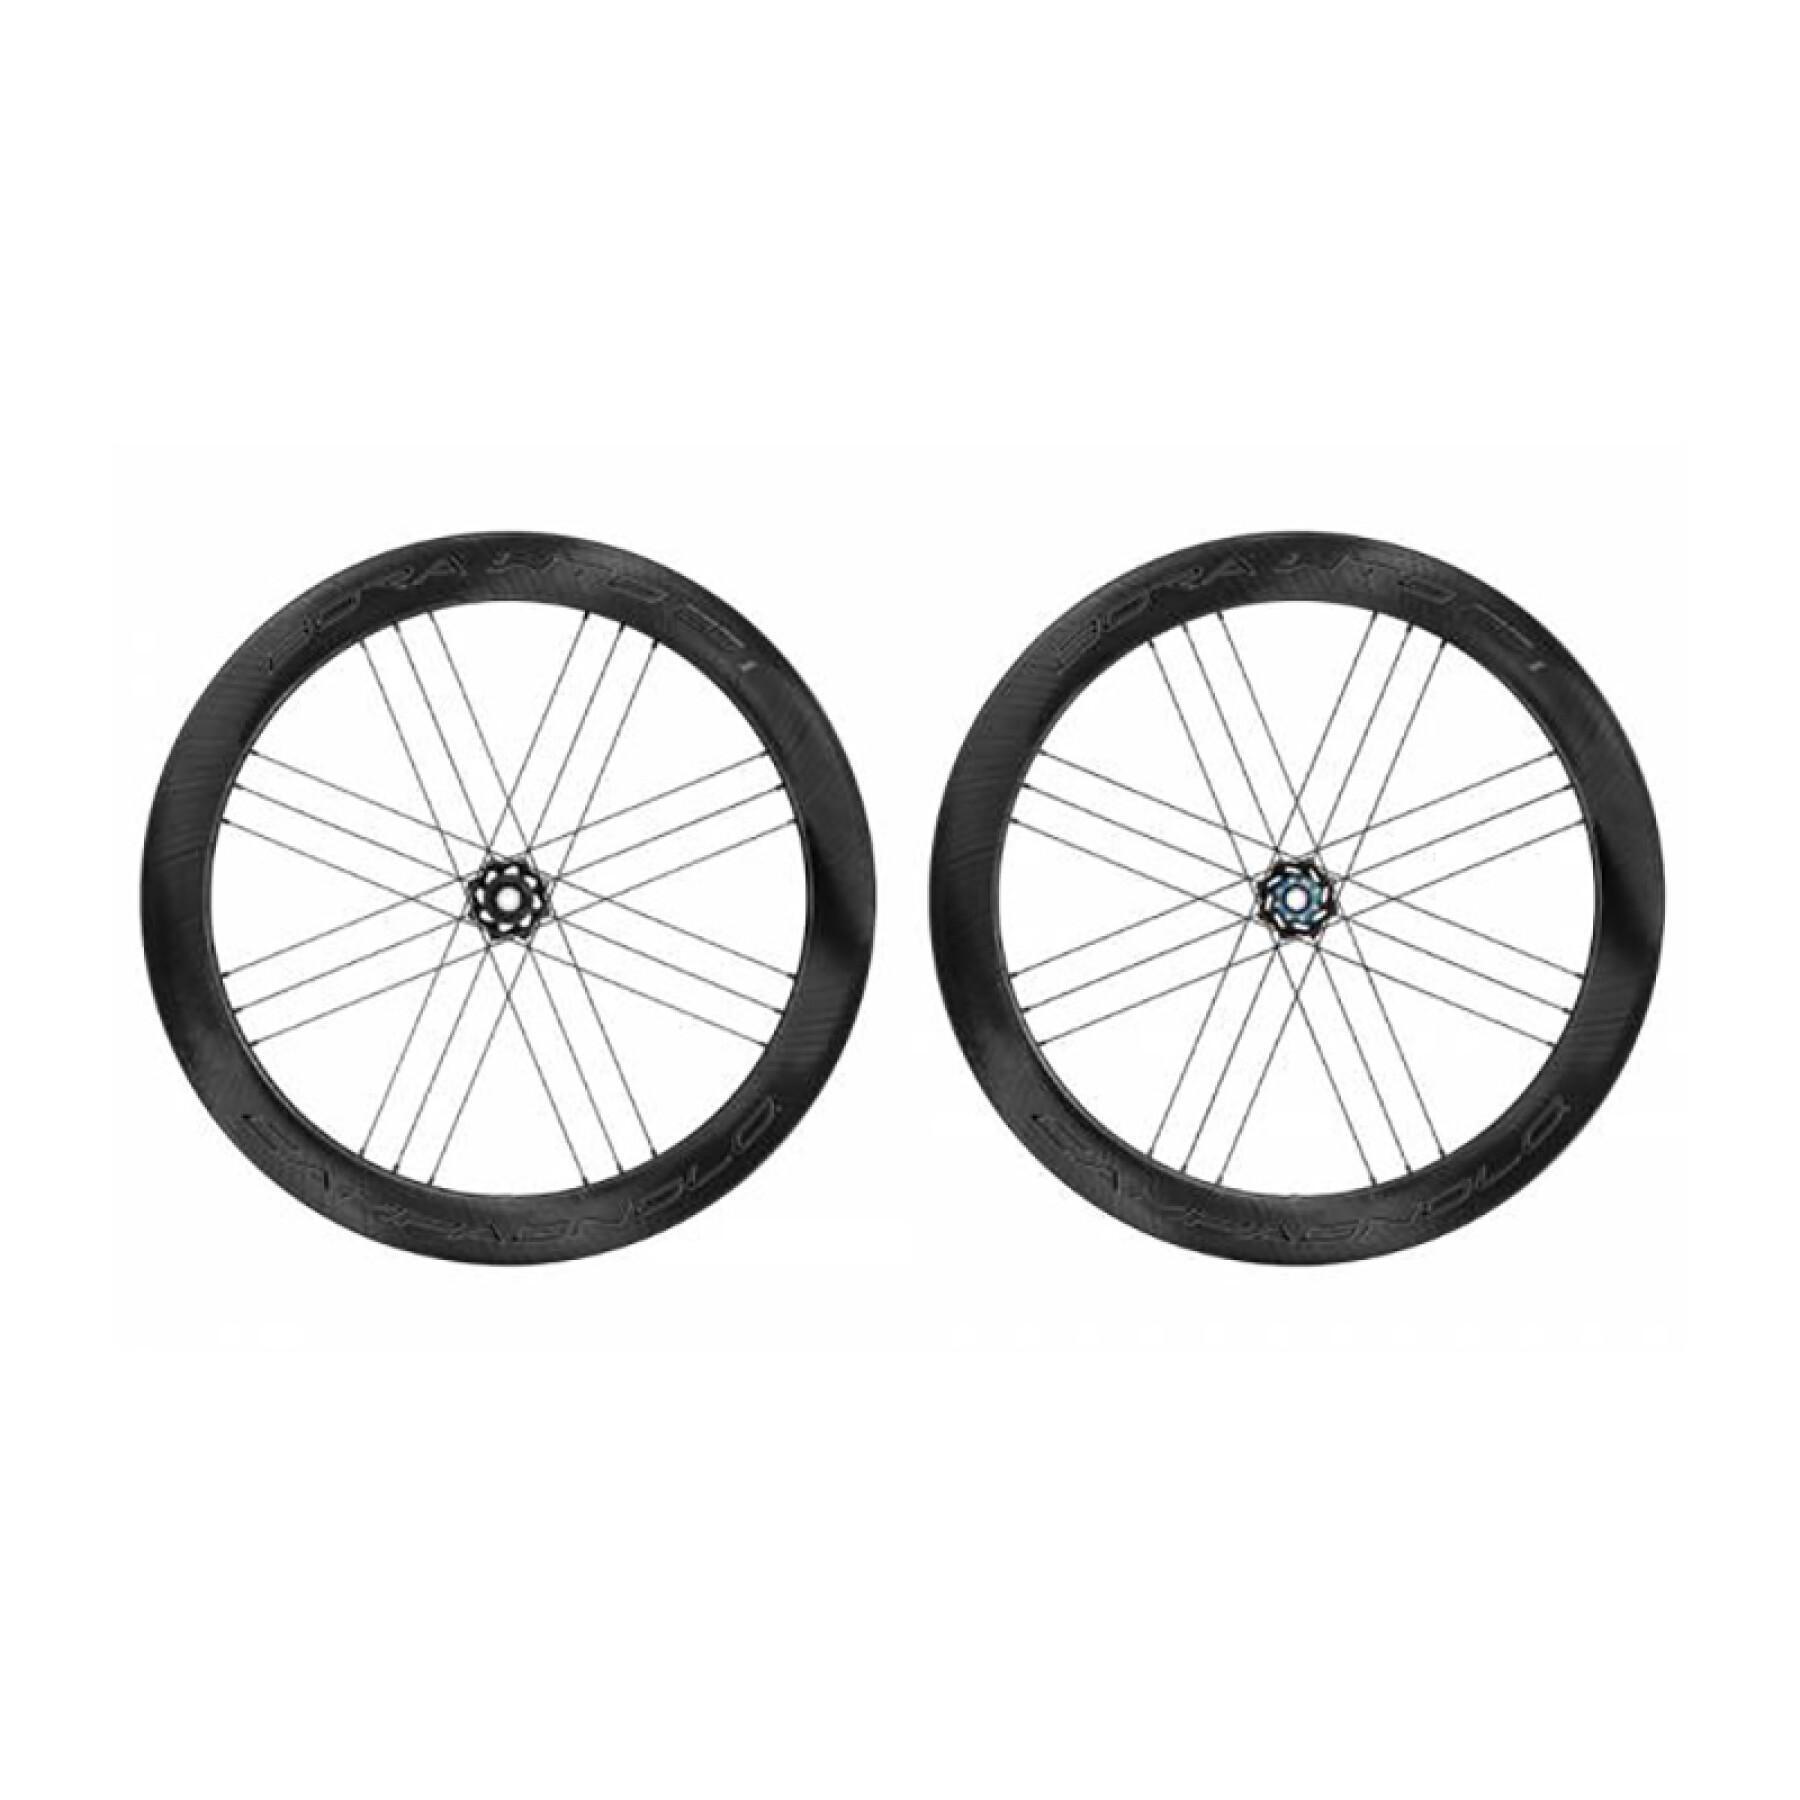 Cykelhjul Campagnolo Bora Wto 60 2Wf Disque Tubeless Shimano Hg11